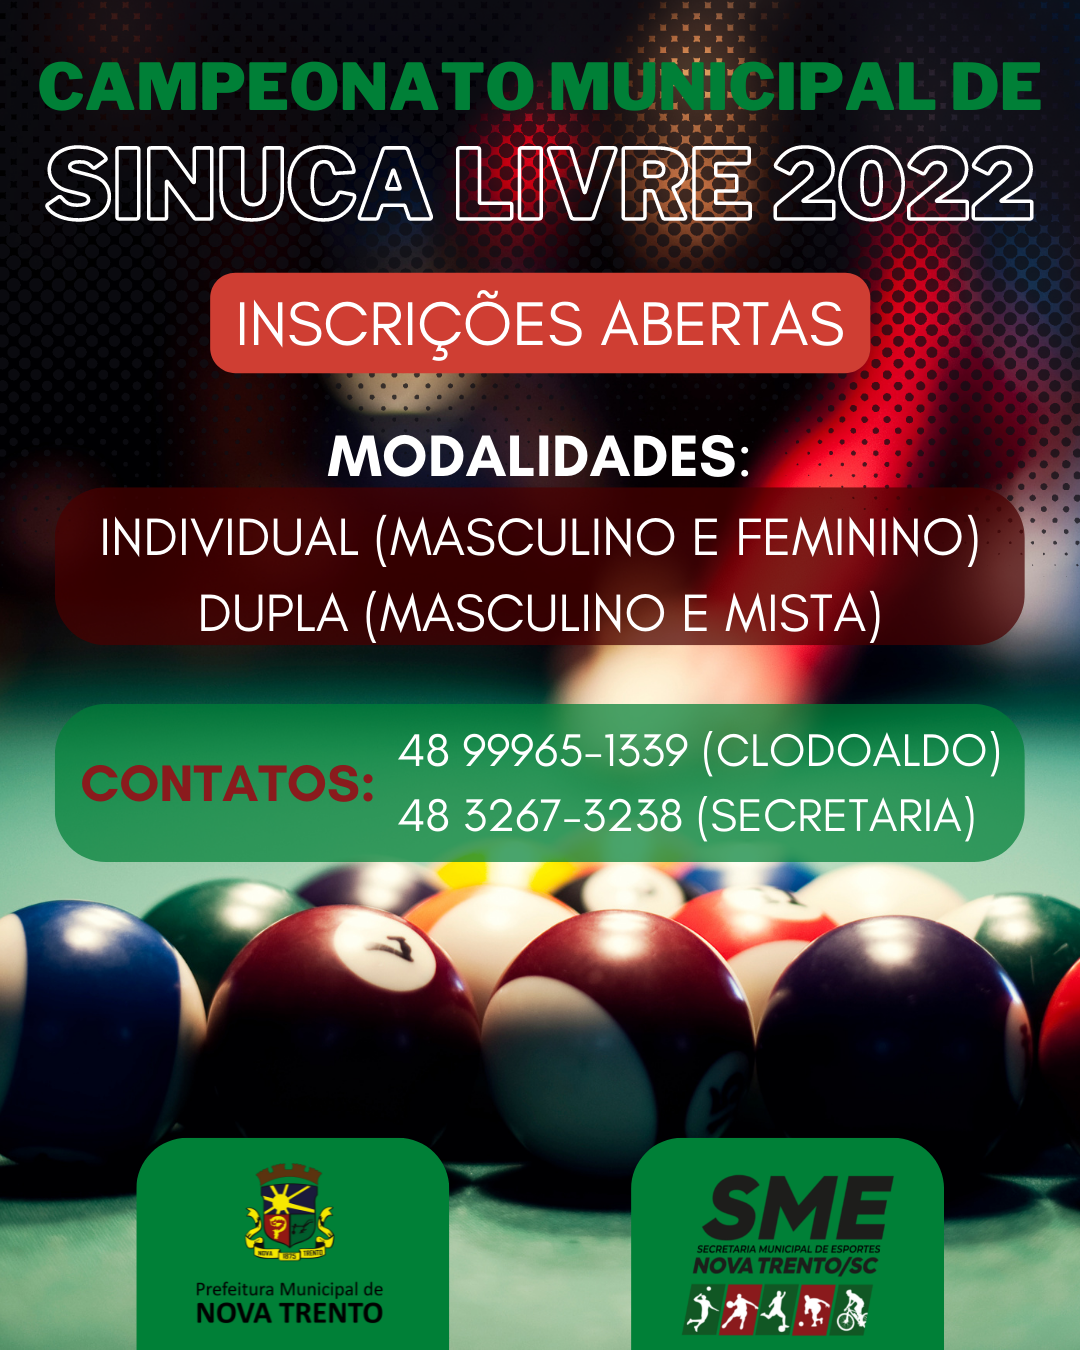 Inscrições para o Campeonato Municipal de Sinuca Livre 2023 seguem abertas  – Prefeitura de Nova Trento